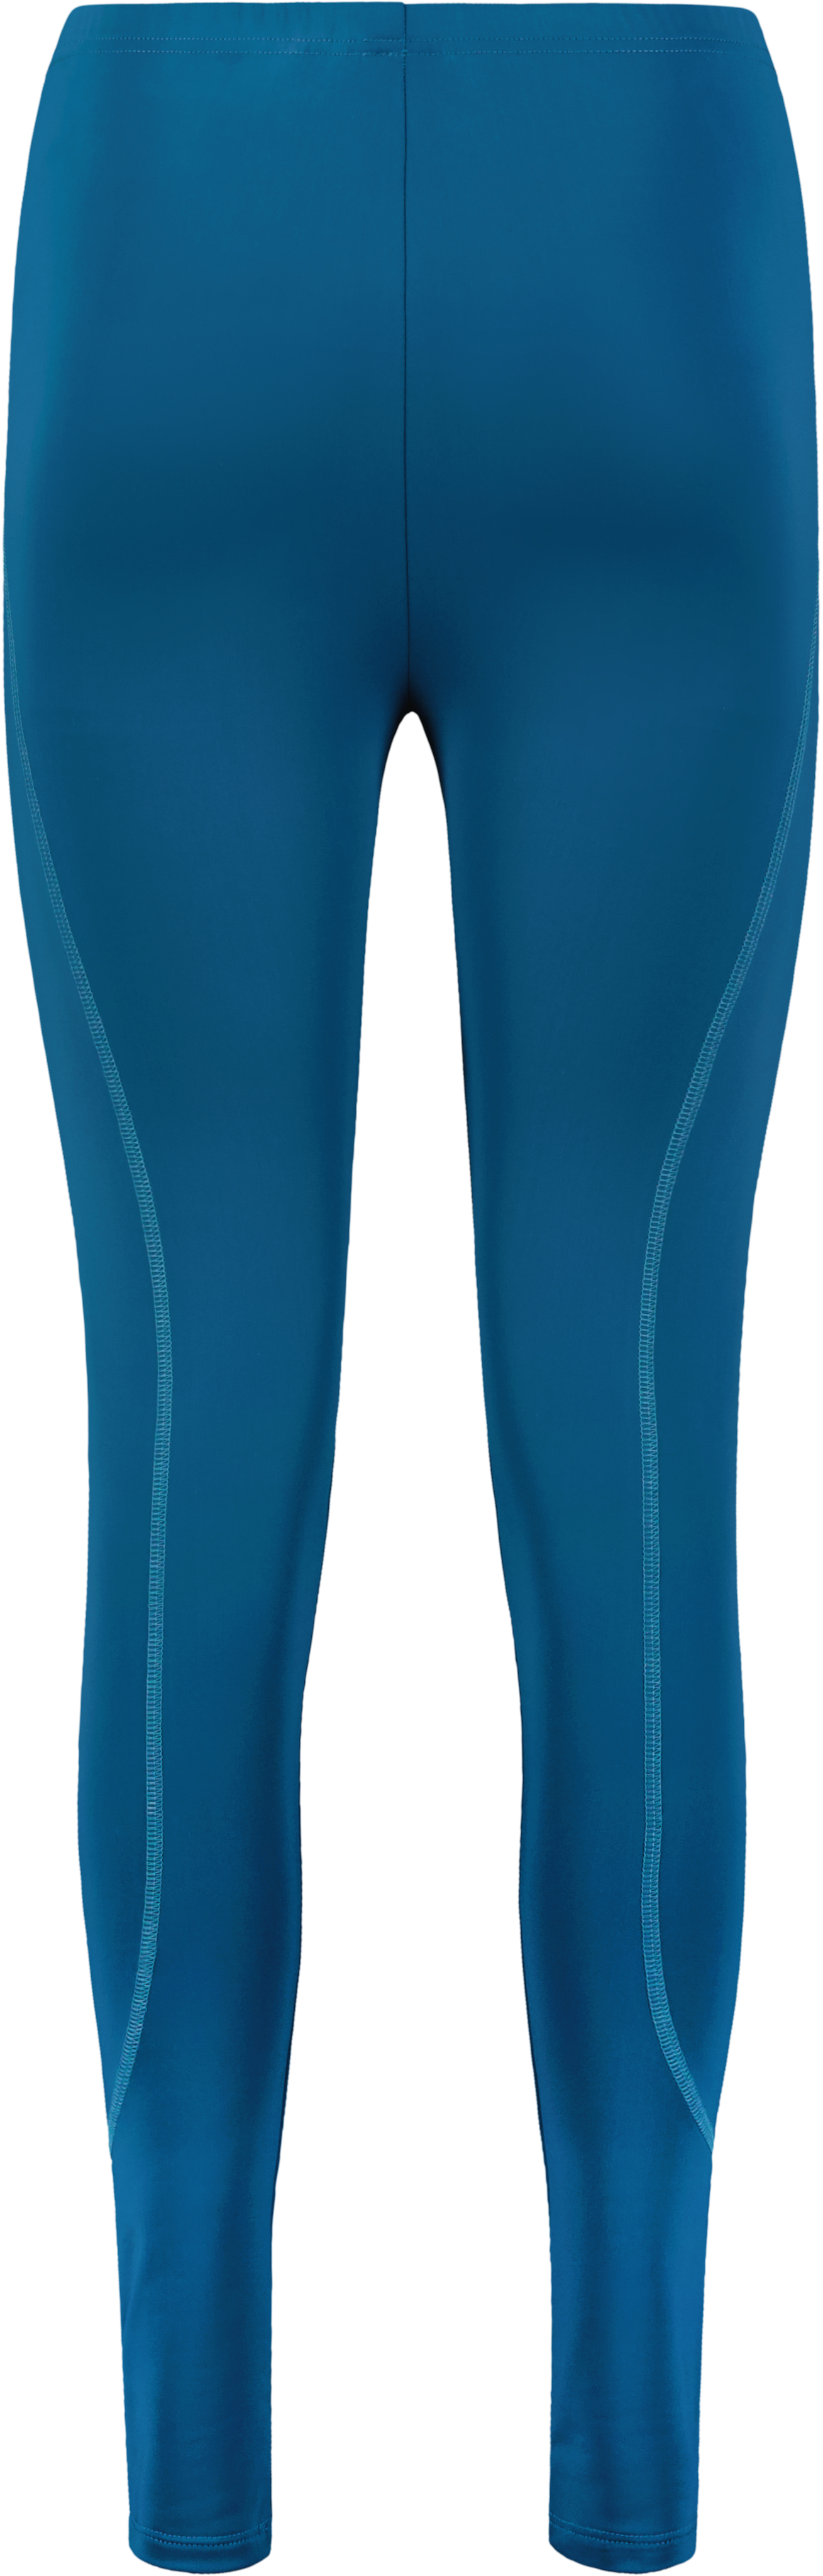 Women's TS-Star Leggings - Turquoise